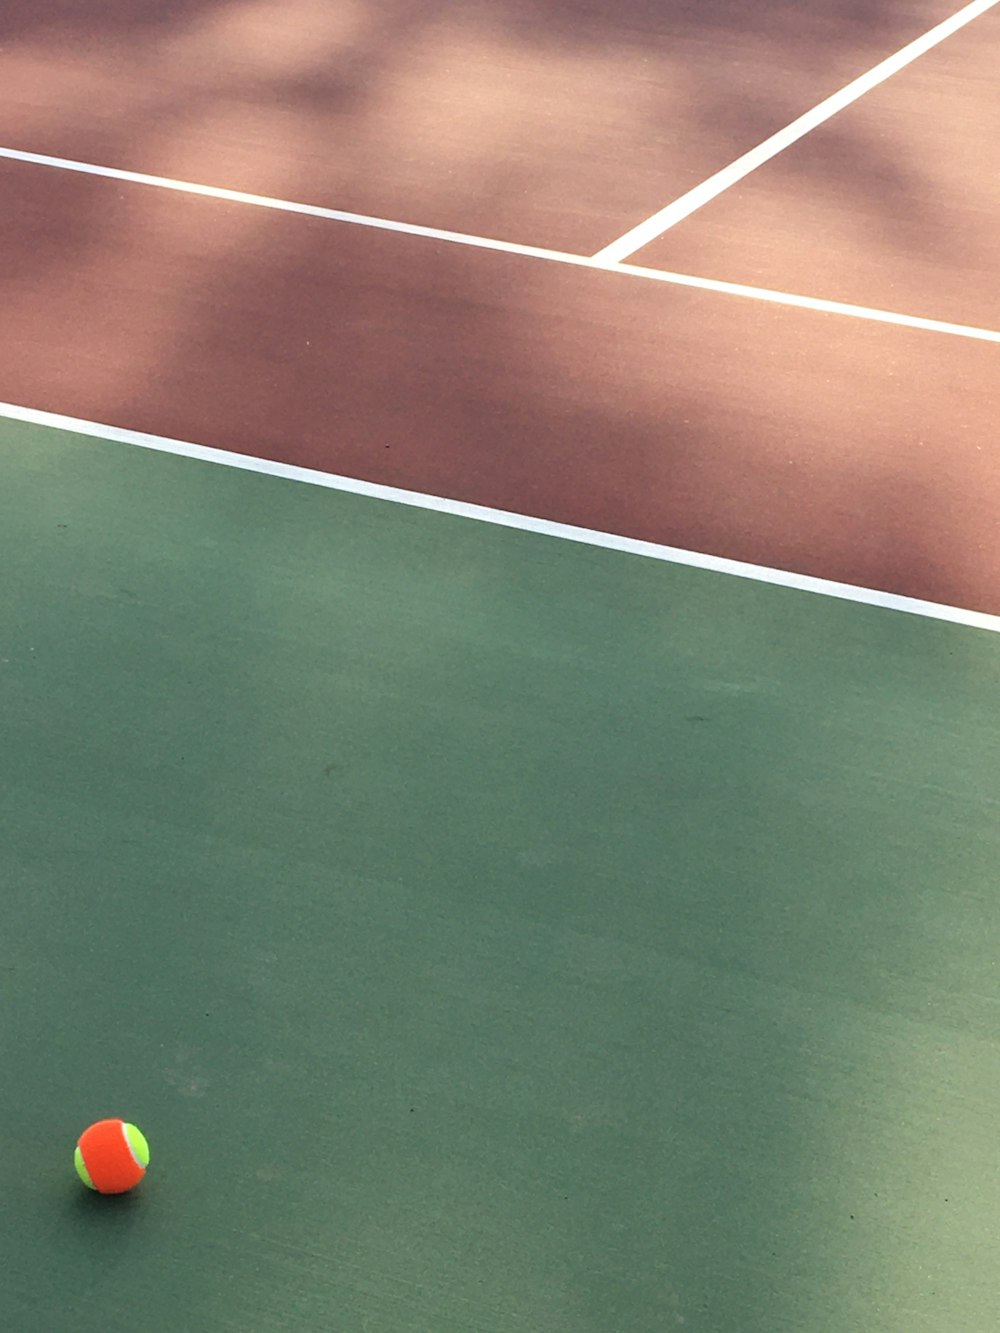 주황색과 녹색 테니스 공